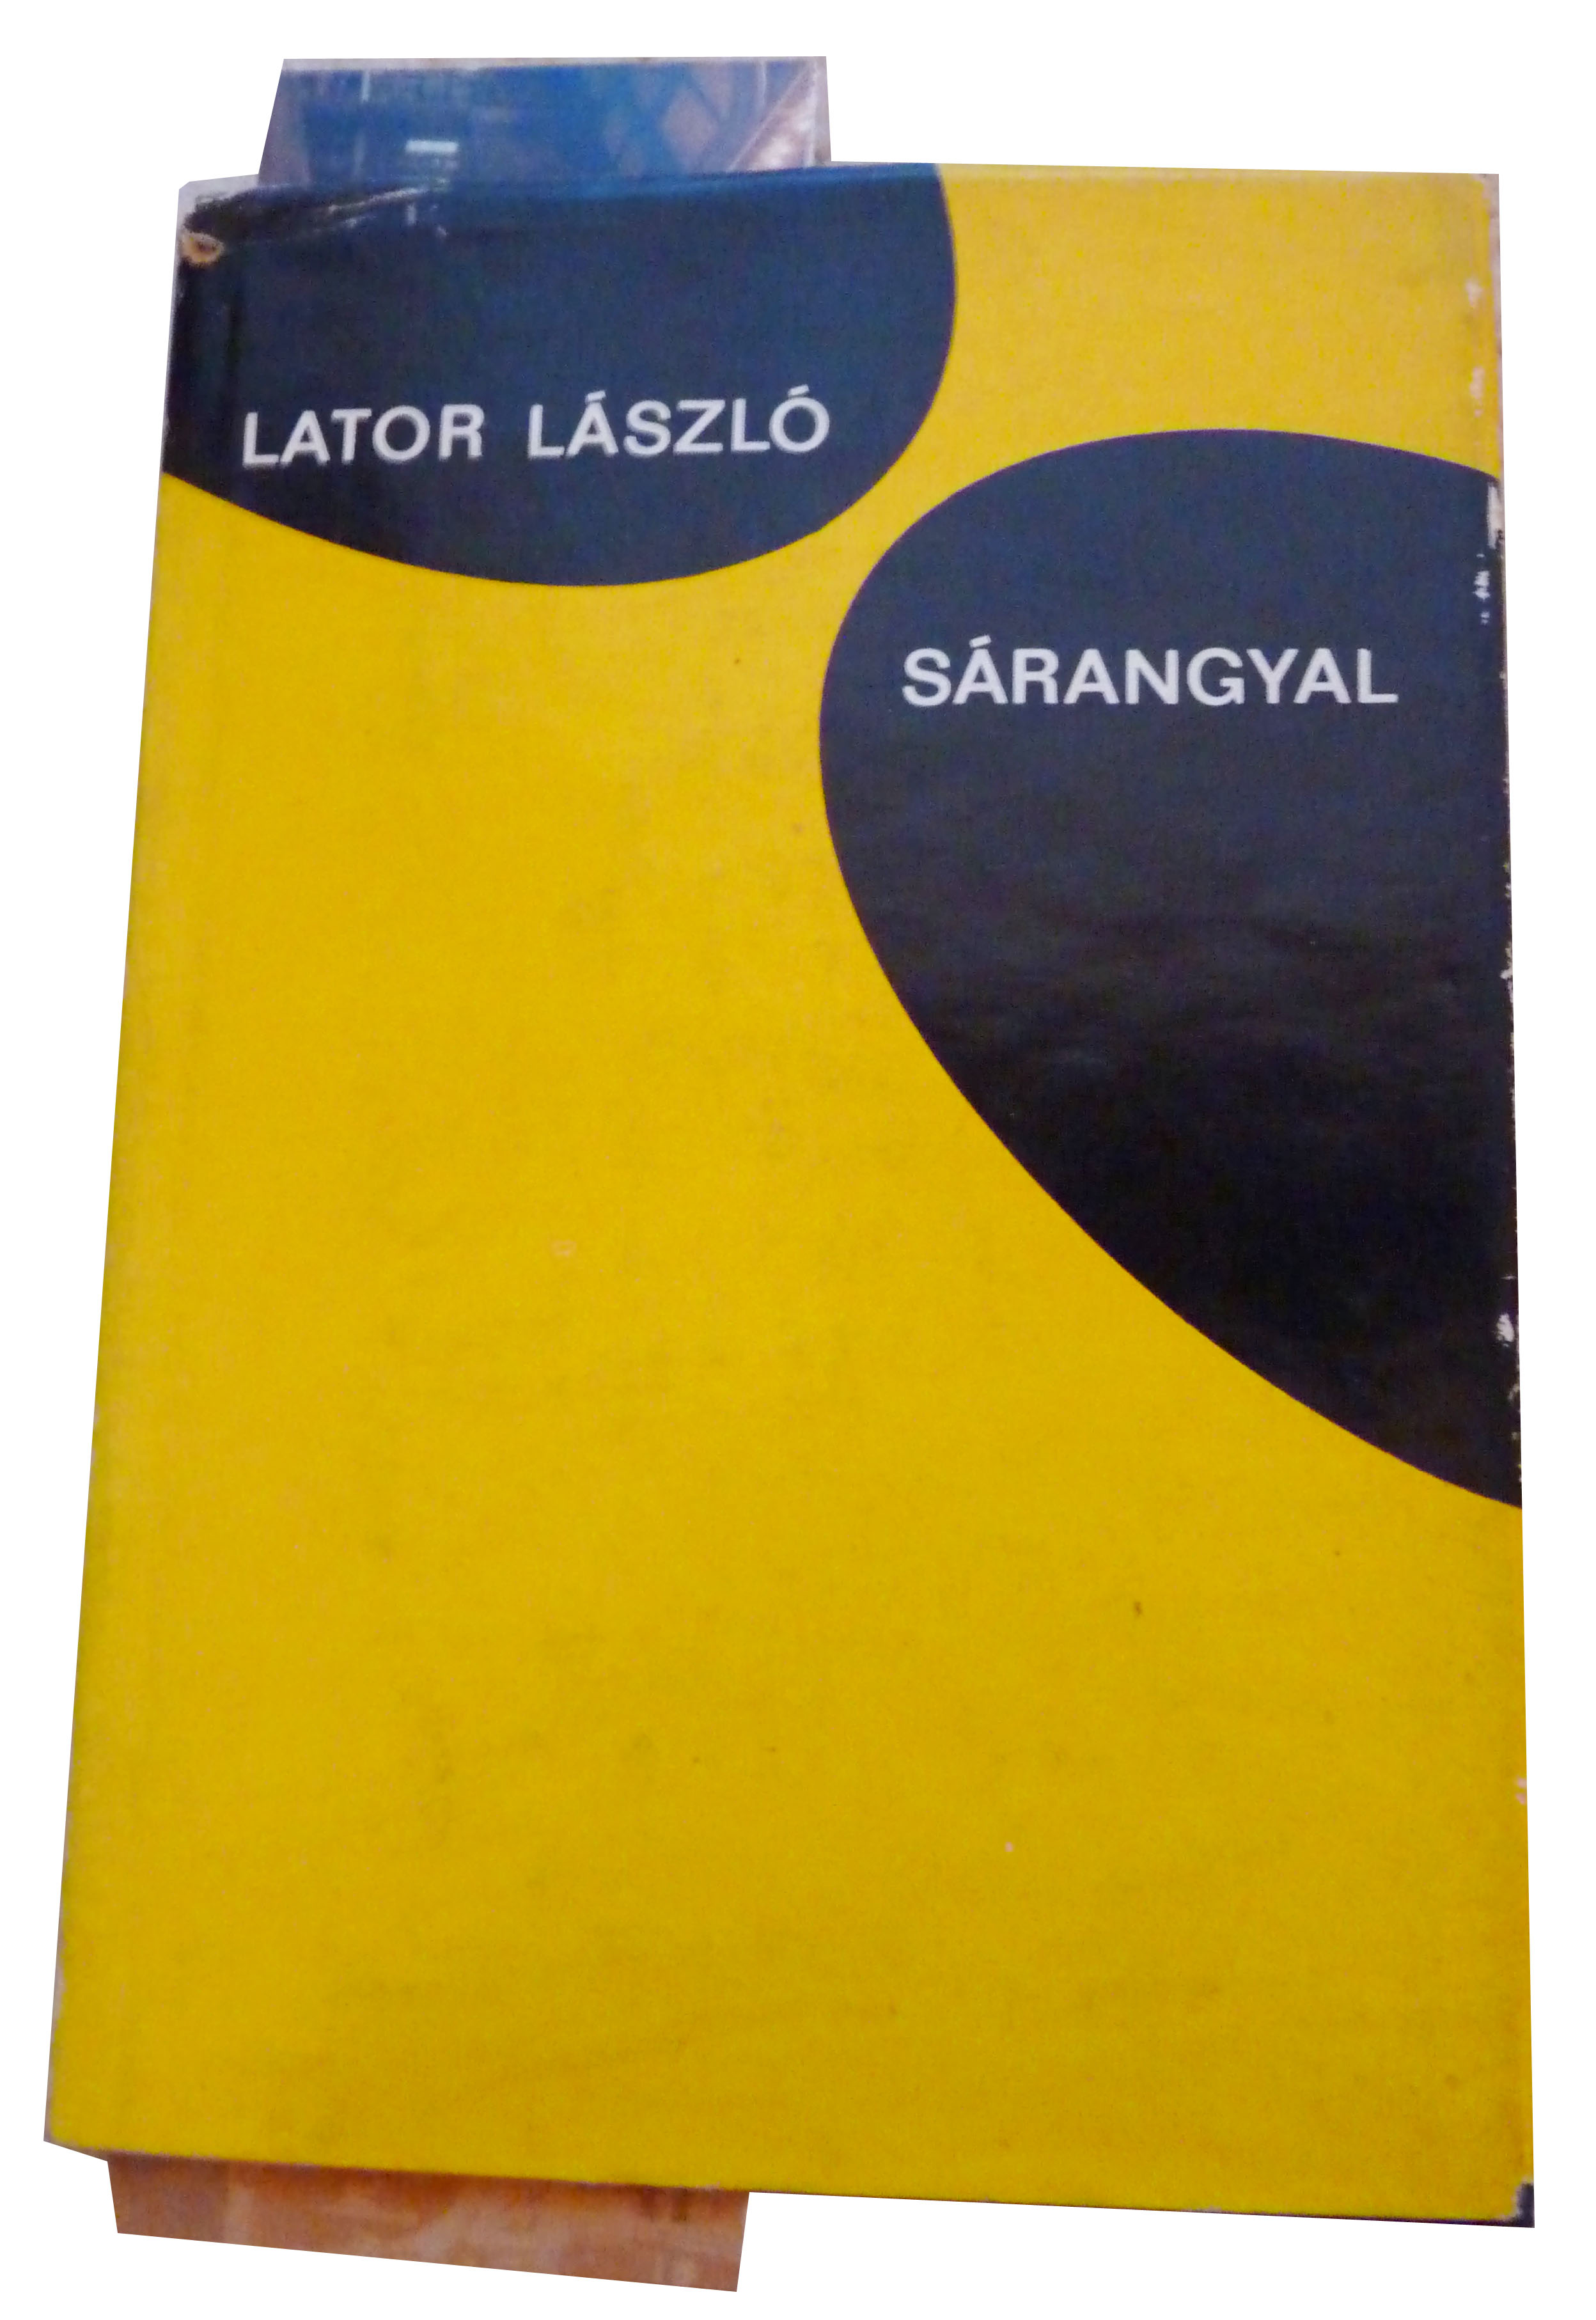 László Lator